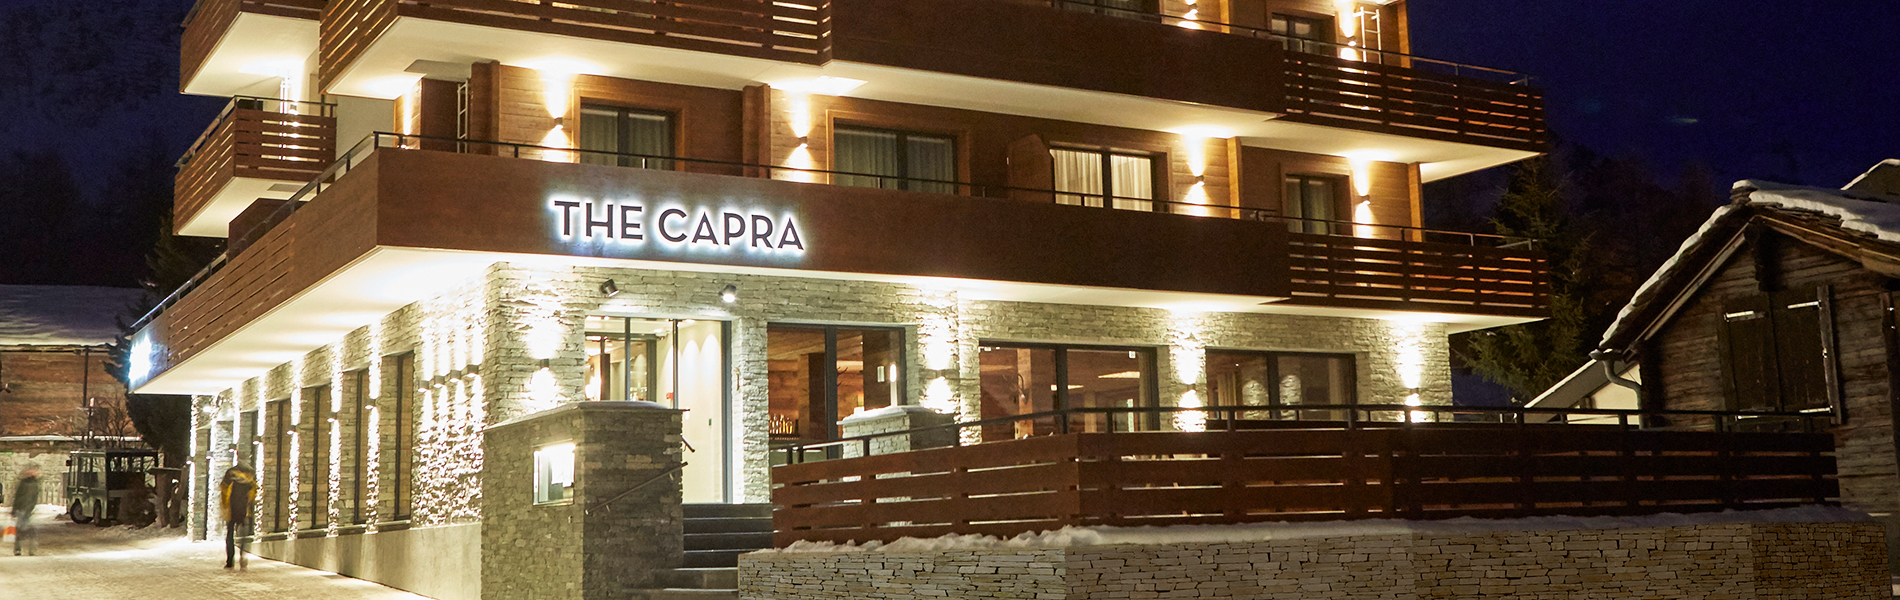 The Capra Signage